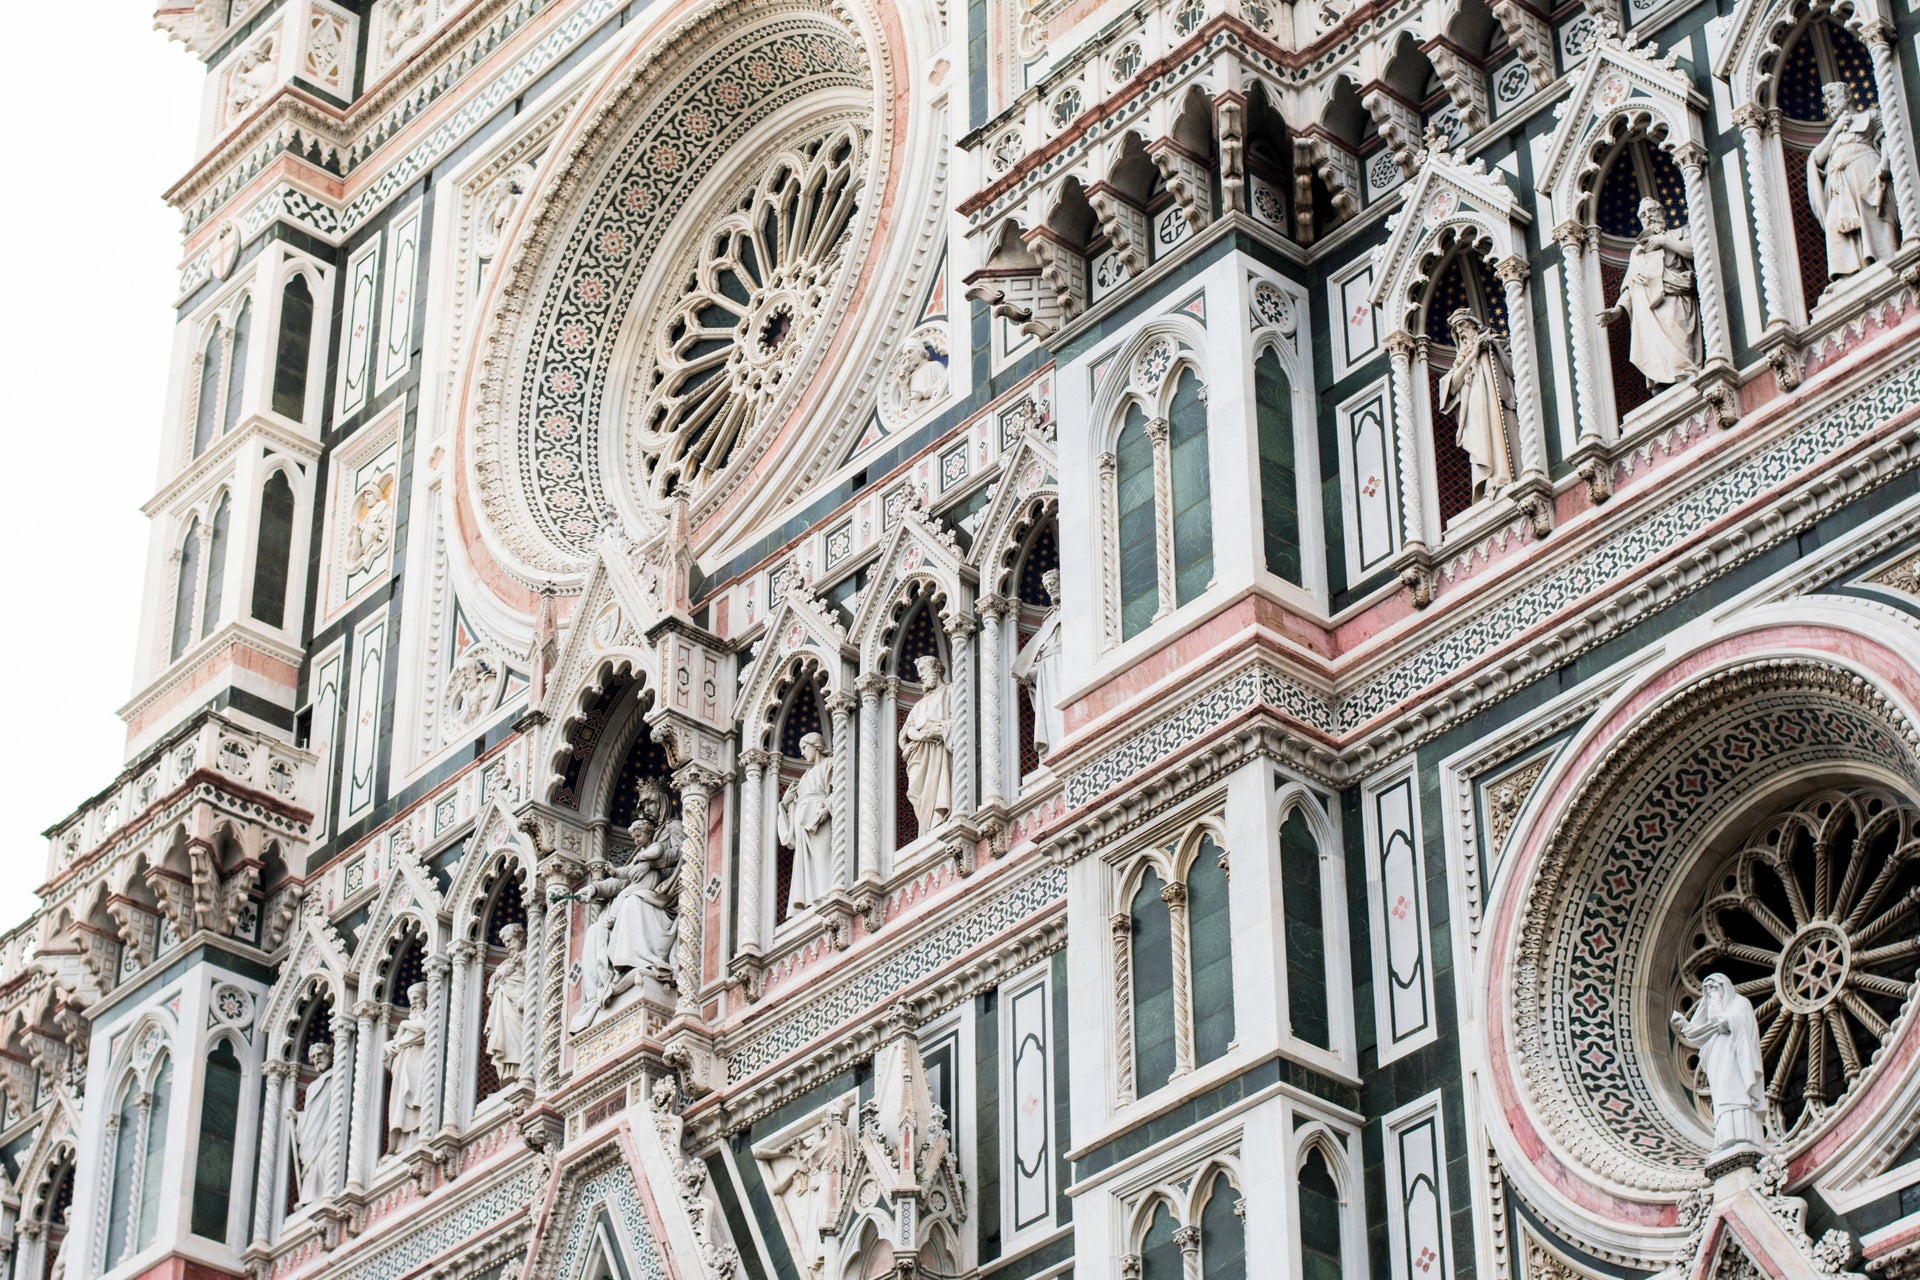 Excursão à Catedral de Florença + Cúpula e Terraços